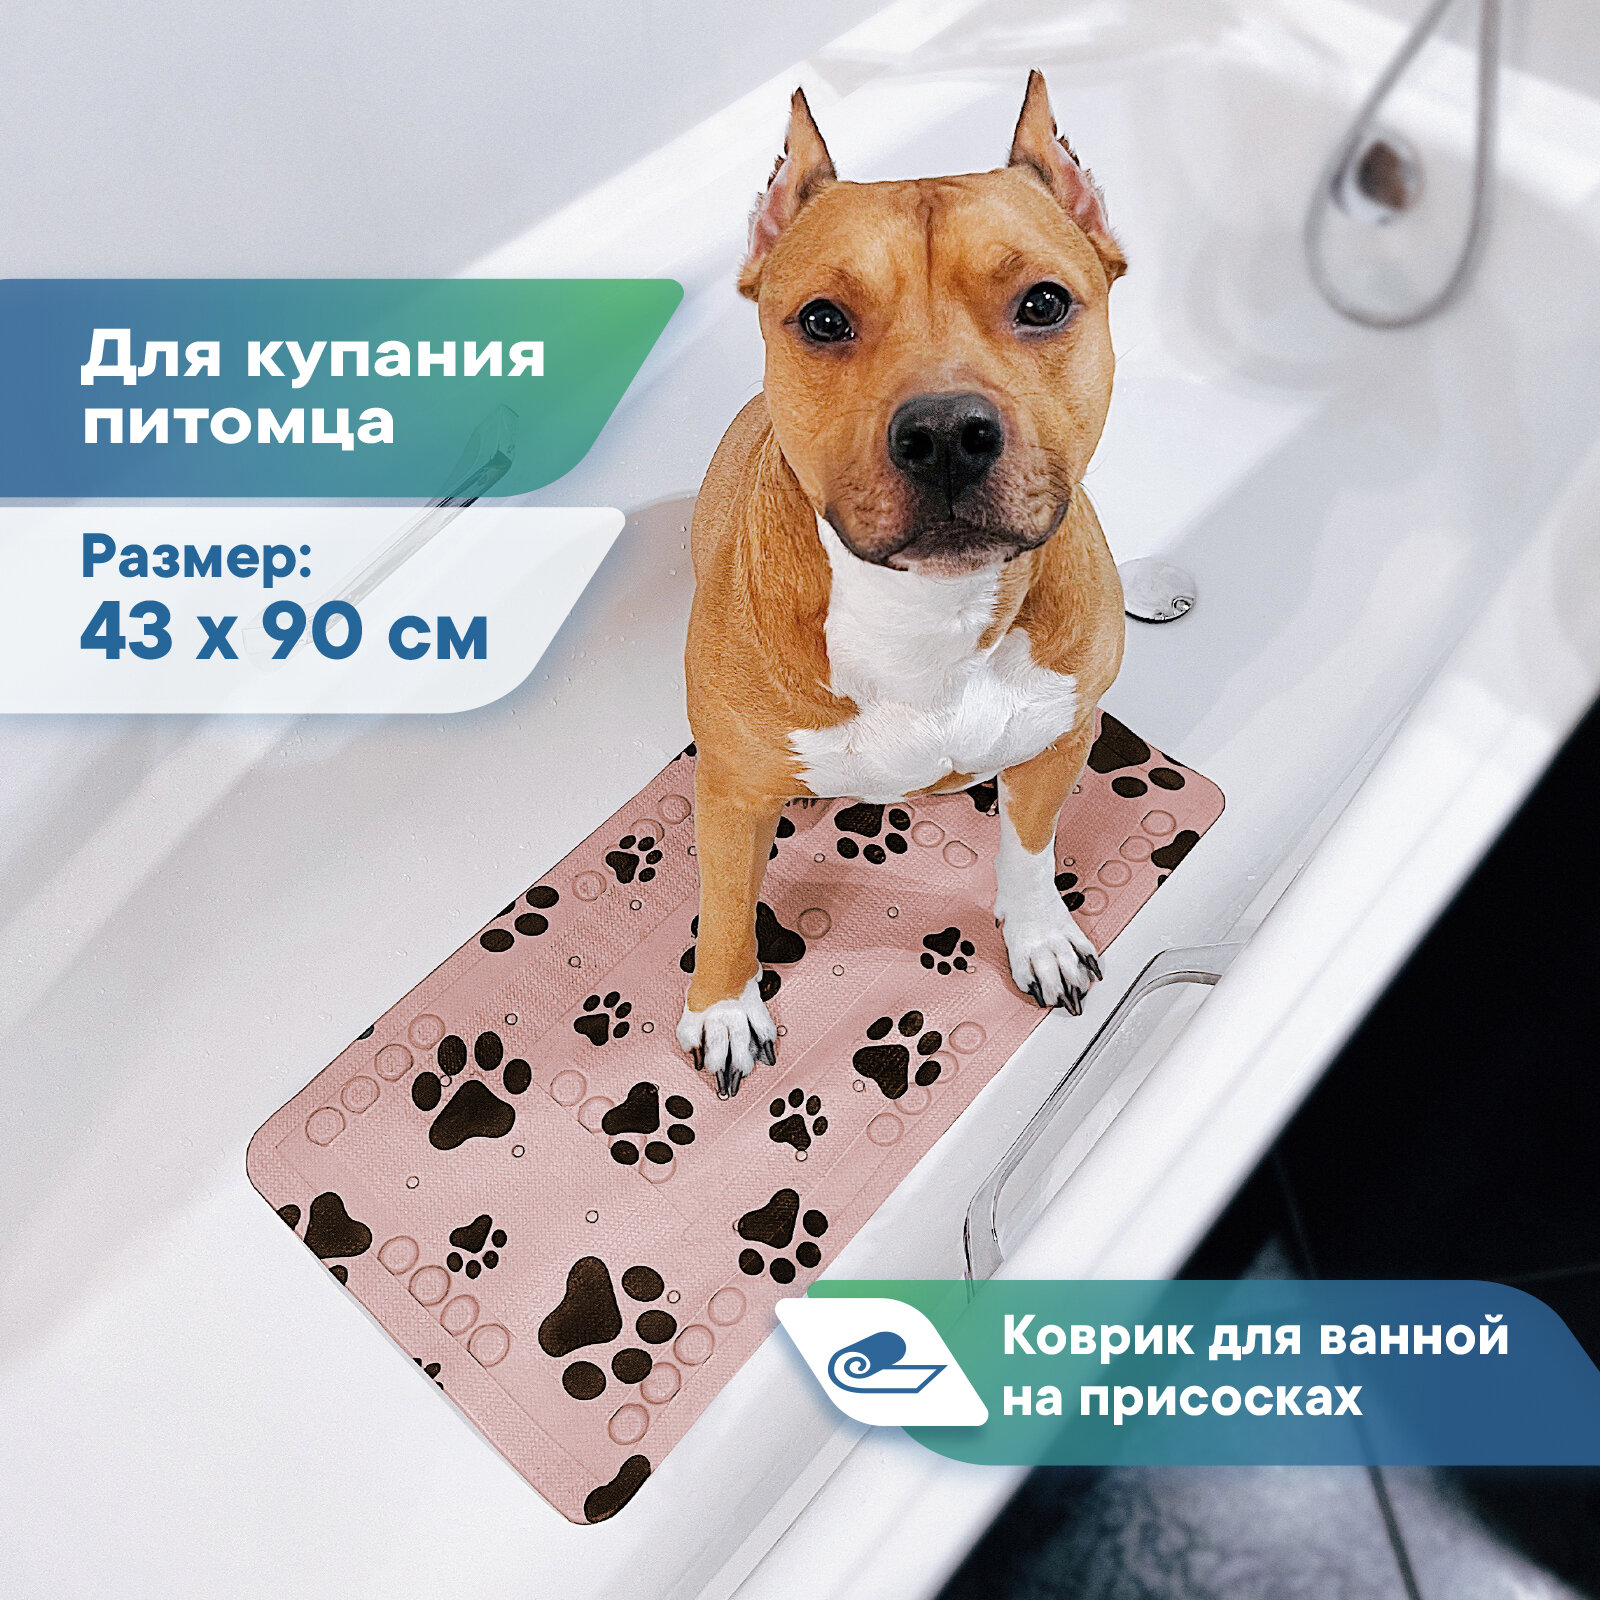 Коврик для животных для ванной с присосками 43х90 см / коврик для купания собак и мытья пыльно-розовый